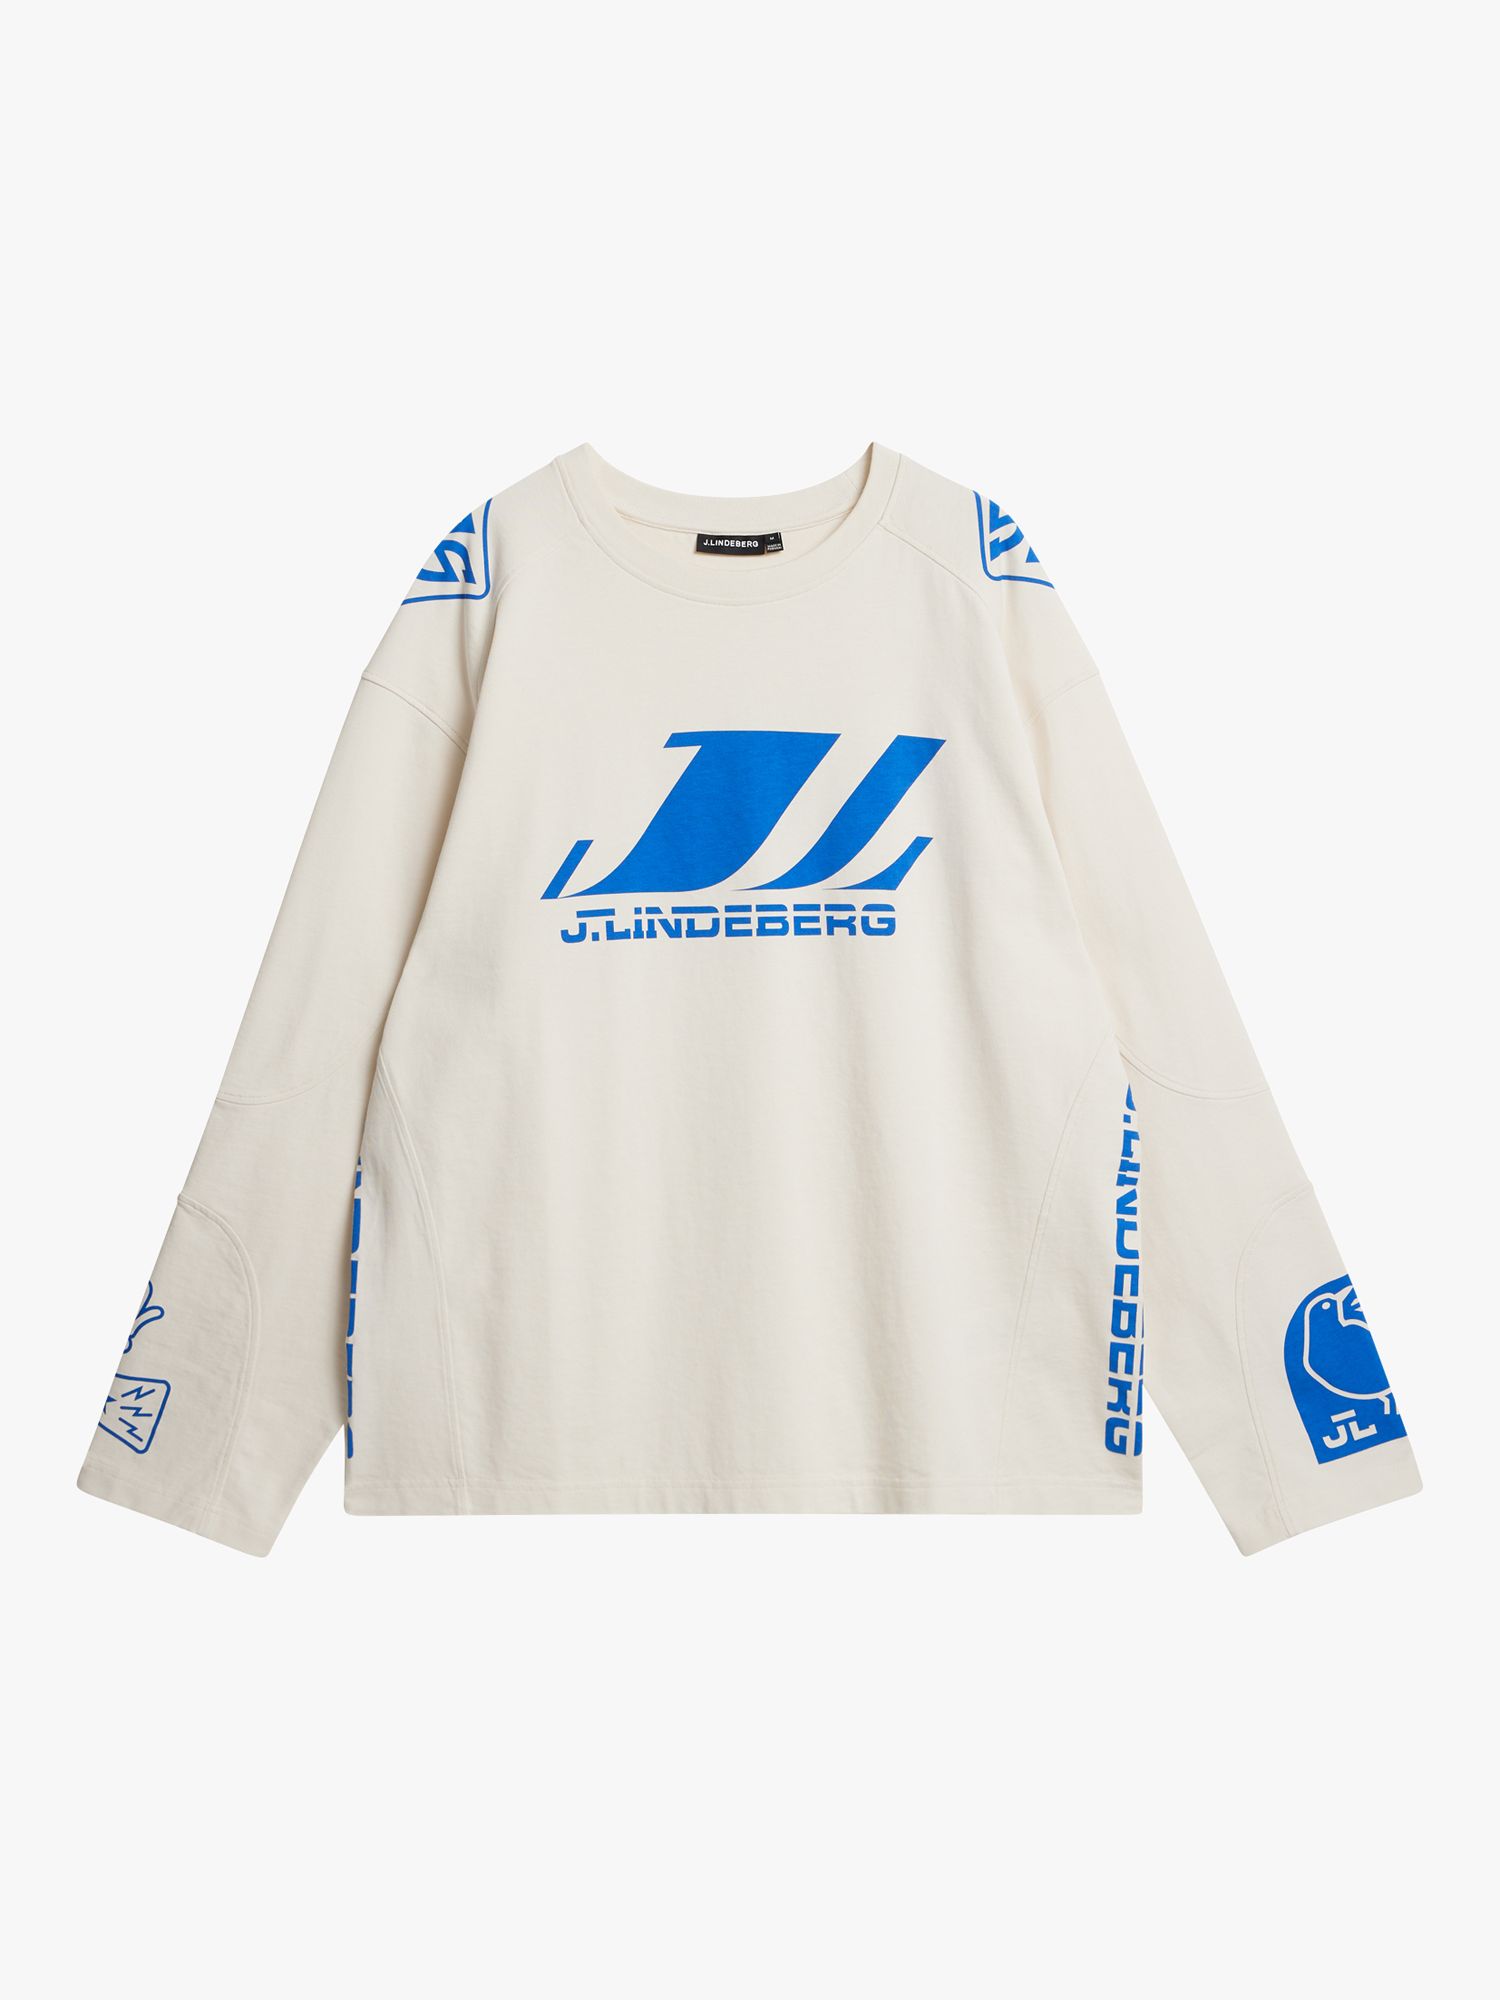 J.Lindeberg Derk Long Sleeve Moto T-Shirt, White/Blue, S